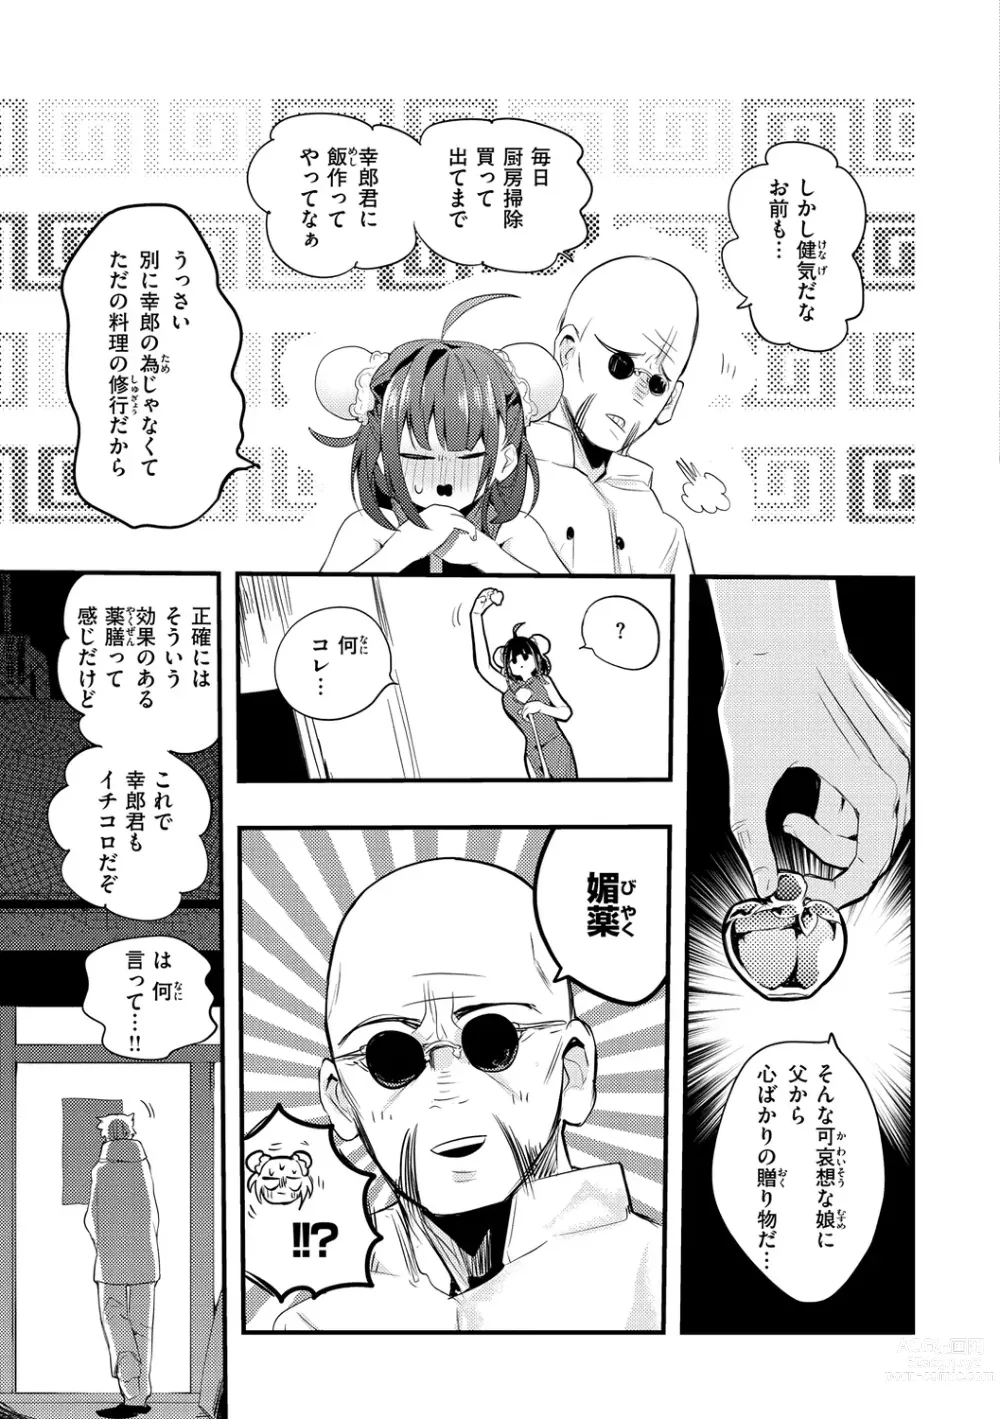 Page 7 of manga New Tawawa Paradise